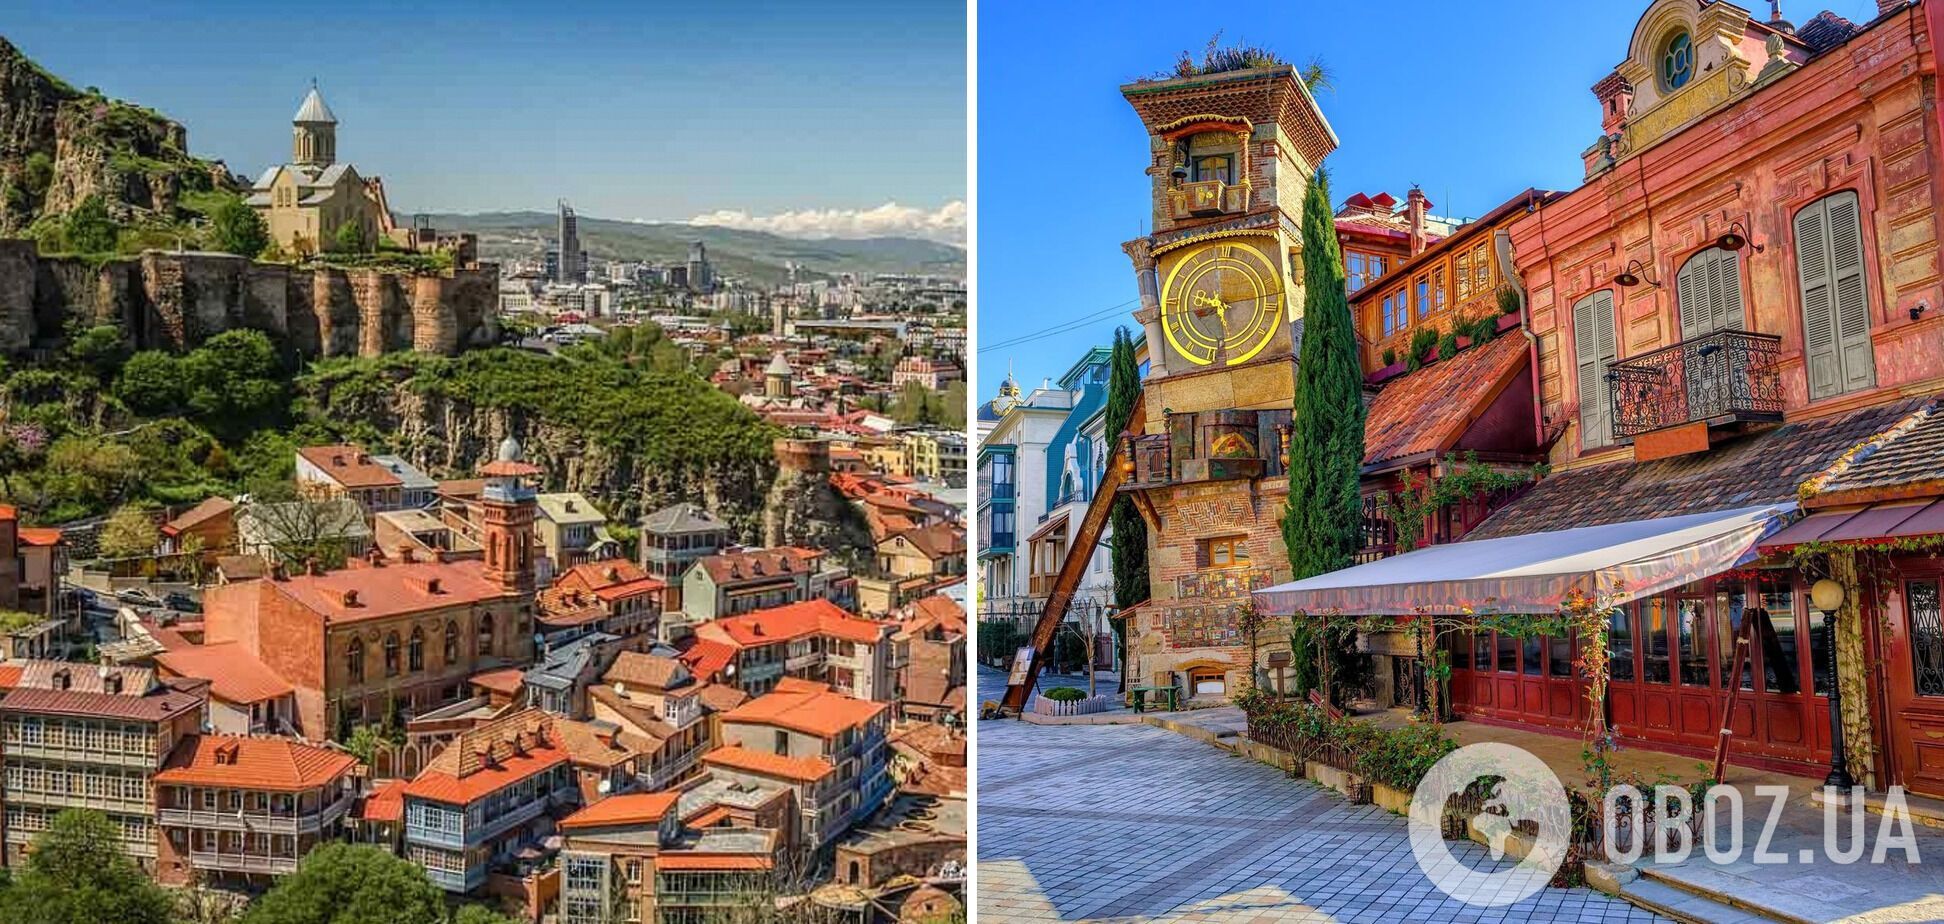 Тбілісі є найдешевшим містом у Європі